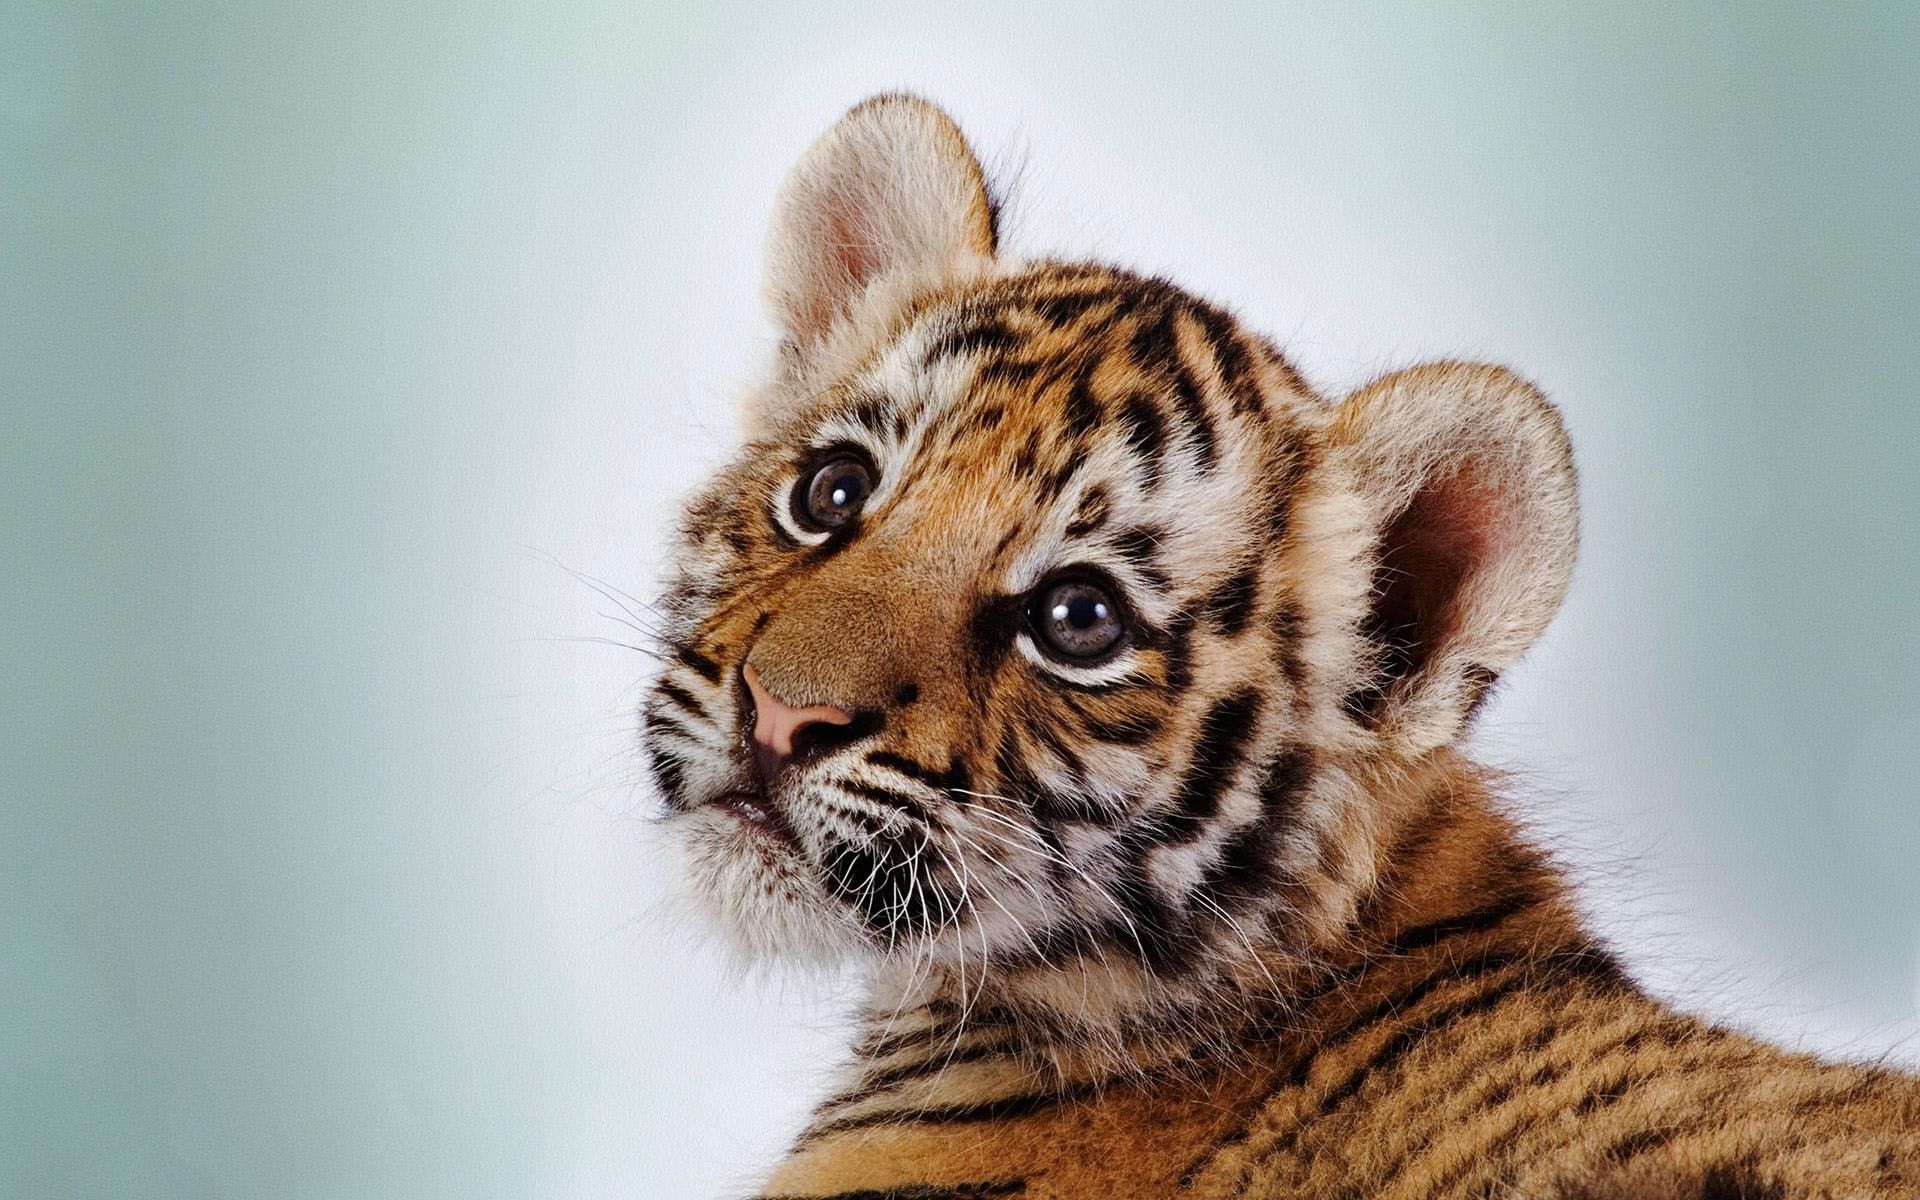  Tiere Hintergrundbild 1920x1200. Hintergrundbild für Handys: Tiere, Tigers, 48229 Bild kostenlos herunterladen